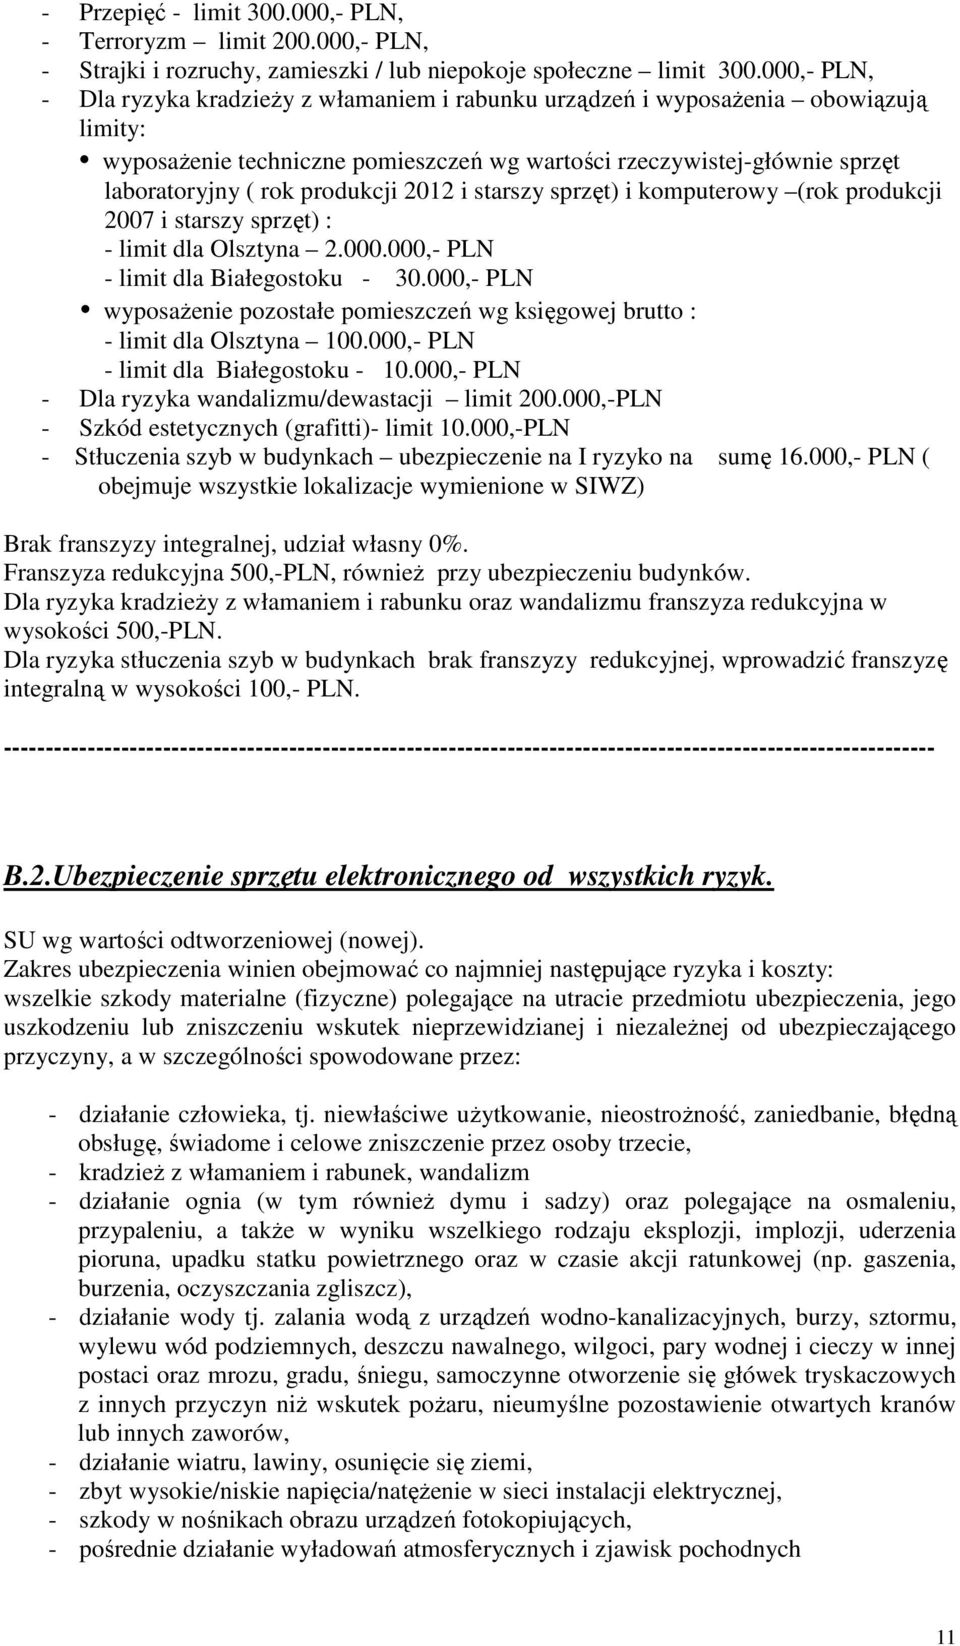 produkcji 2012 i starszy sprzęt) i komputerowy (rok produkcji 2007 i starszy sprzęt) : - limit dla Olsztyna 2.000.000,- PLN - limit dla Białegostoku - 30.